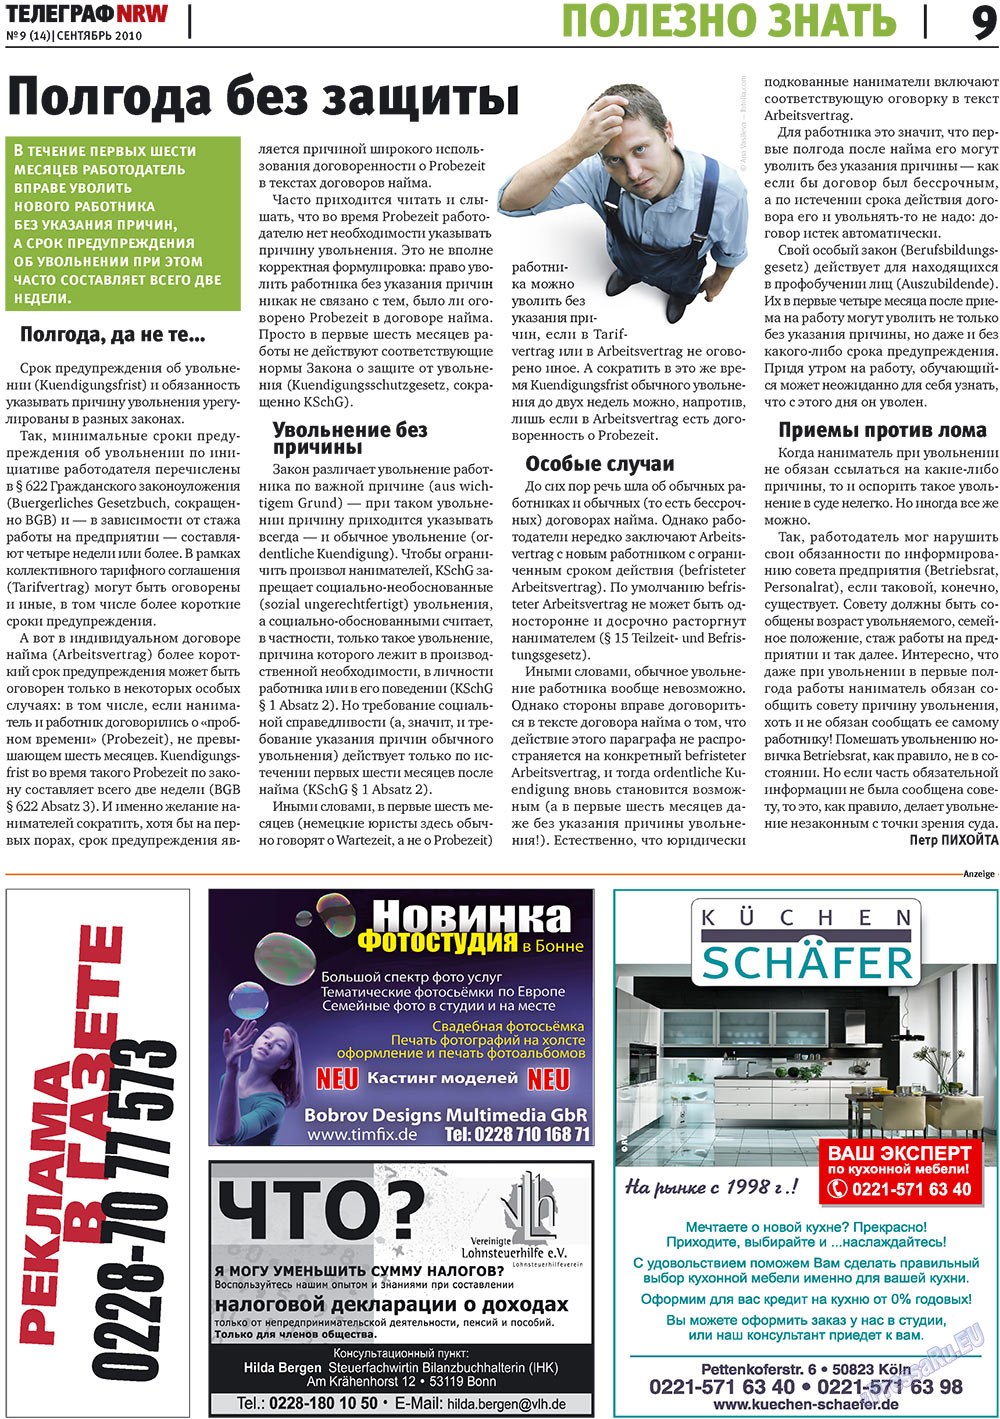 Телеграф NRW (газета). 2010 год, номер 9, стр. 9